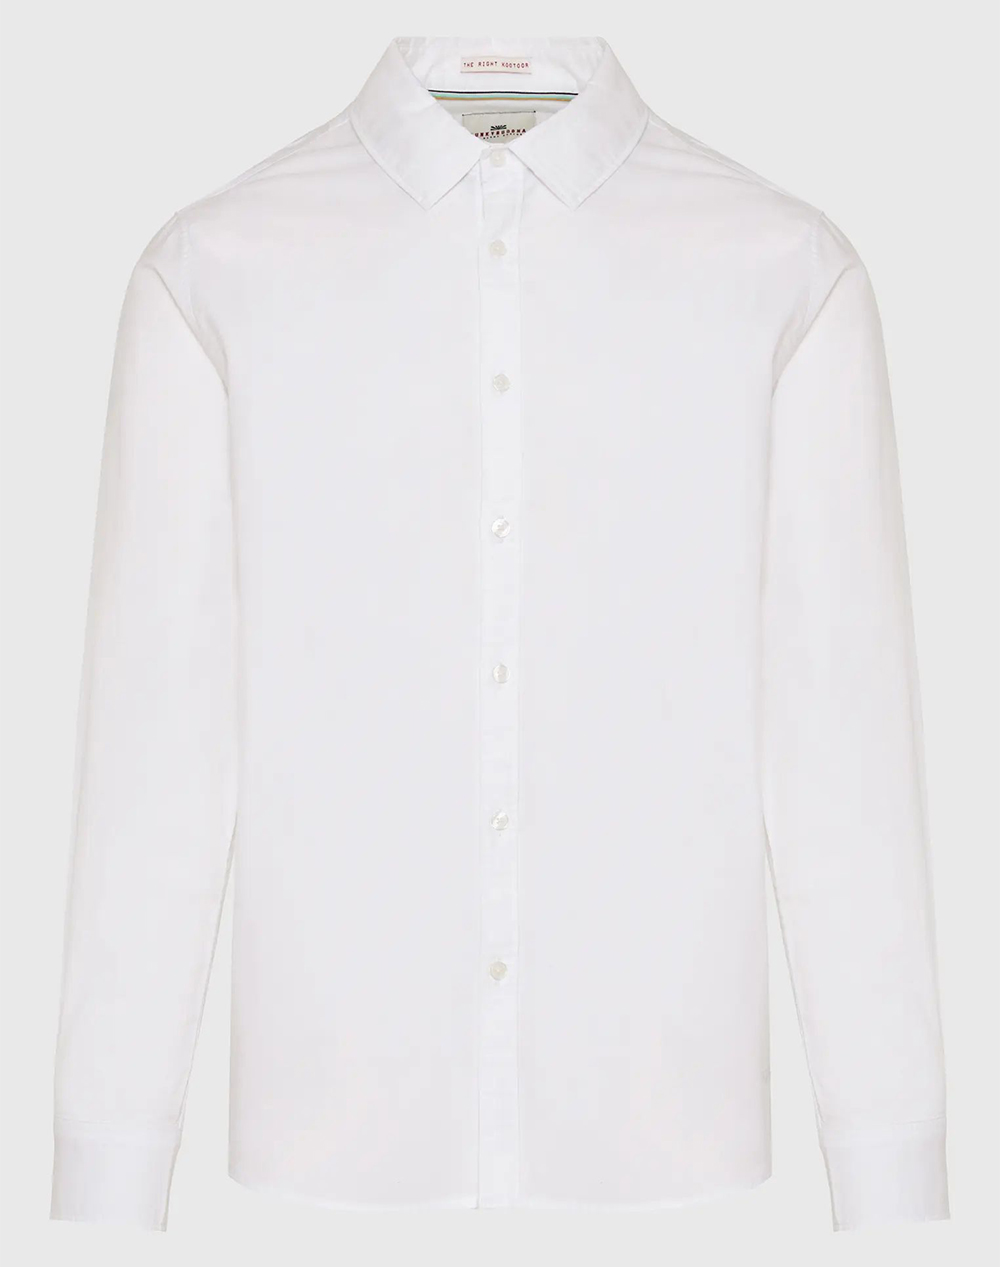 FUNKY BUDDHA Ανδρικό oxford πουκάμισο FBM009-034-05-WHITE White